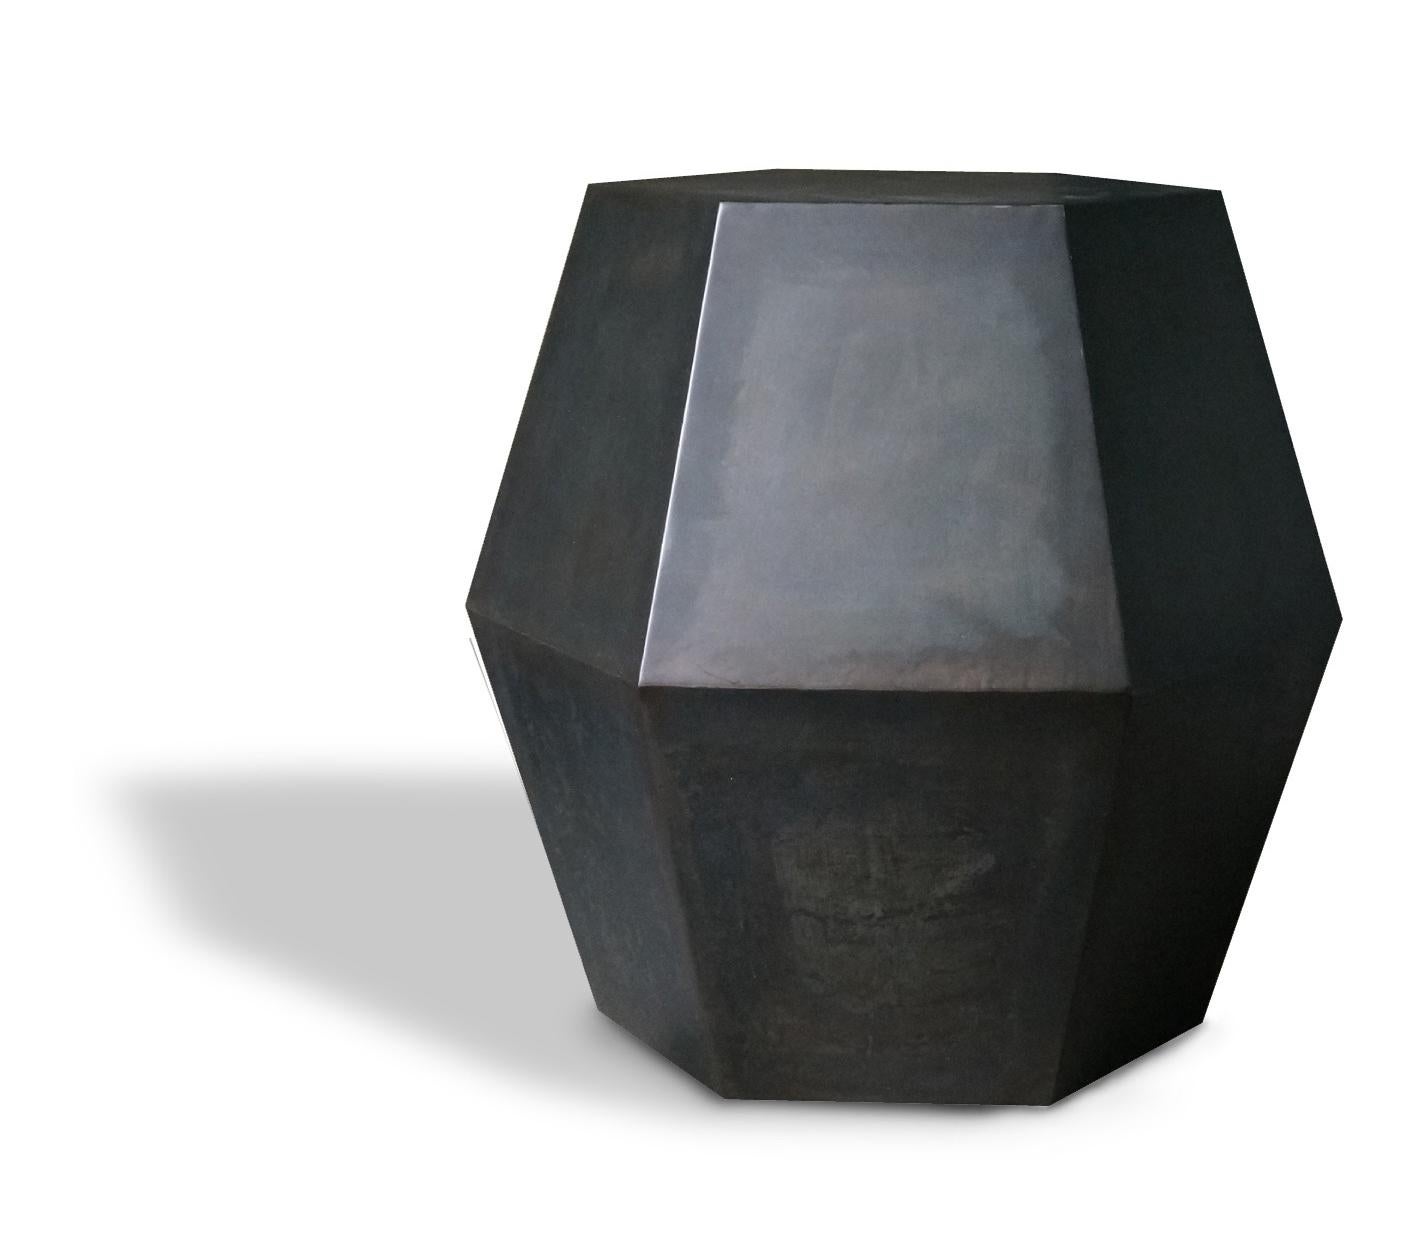 Hex Modern Beistelltisch aus Stahl von Costantini, Tamino

Maße: 17